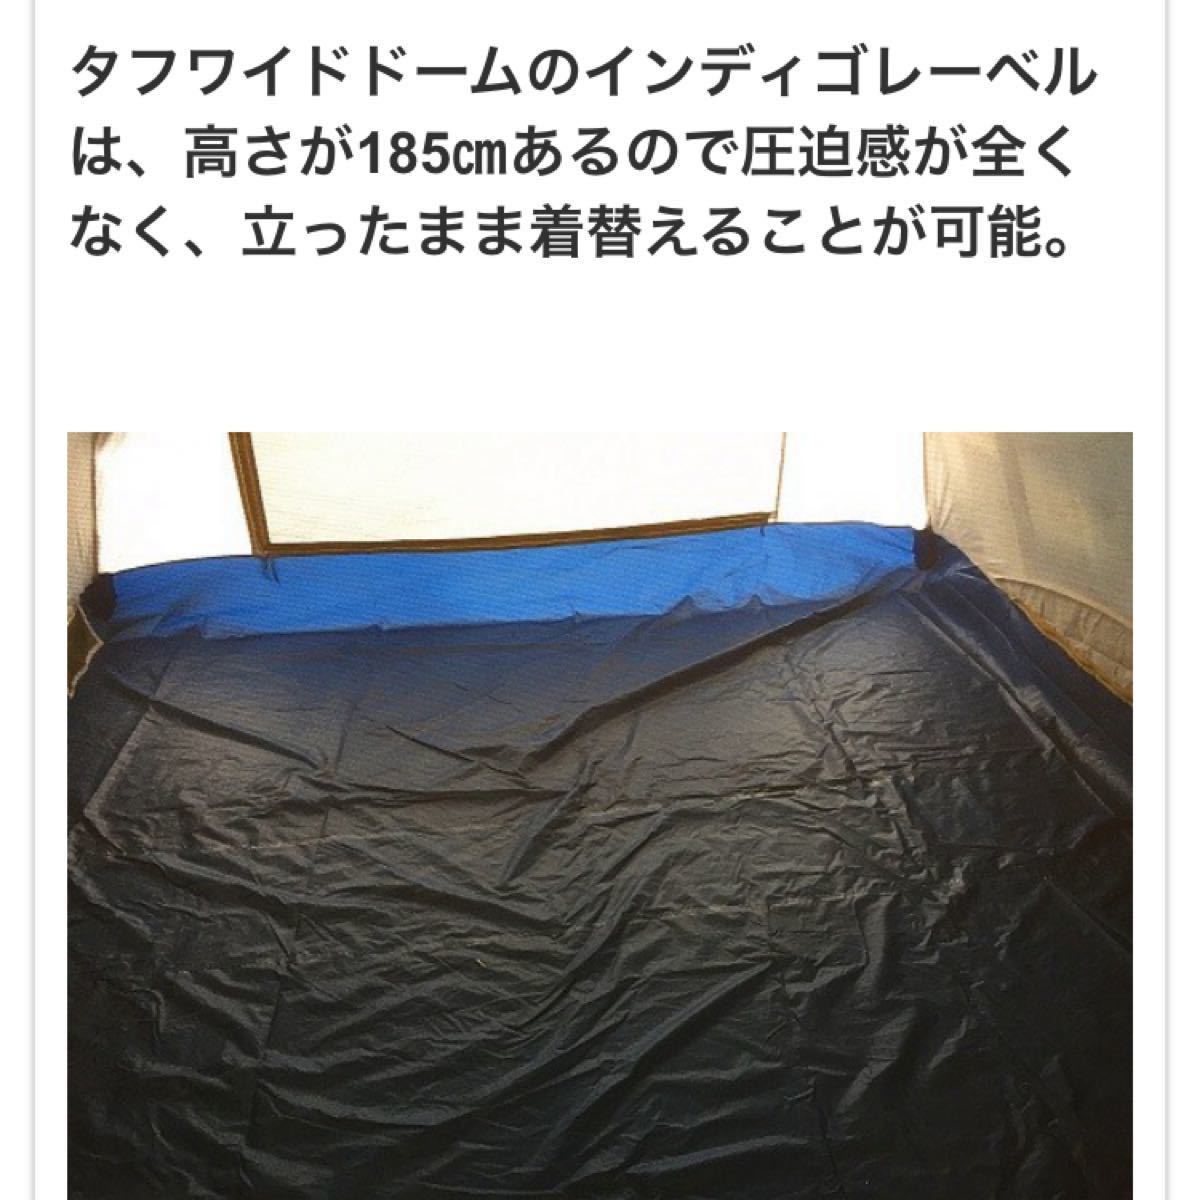 新品 未使用品 限定品 希少品 40周年 激レア モデル 高級 コールマン × monro インディゴ テント キャンプアウトドア